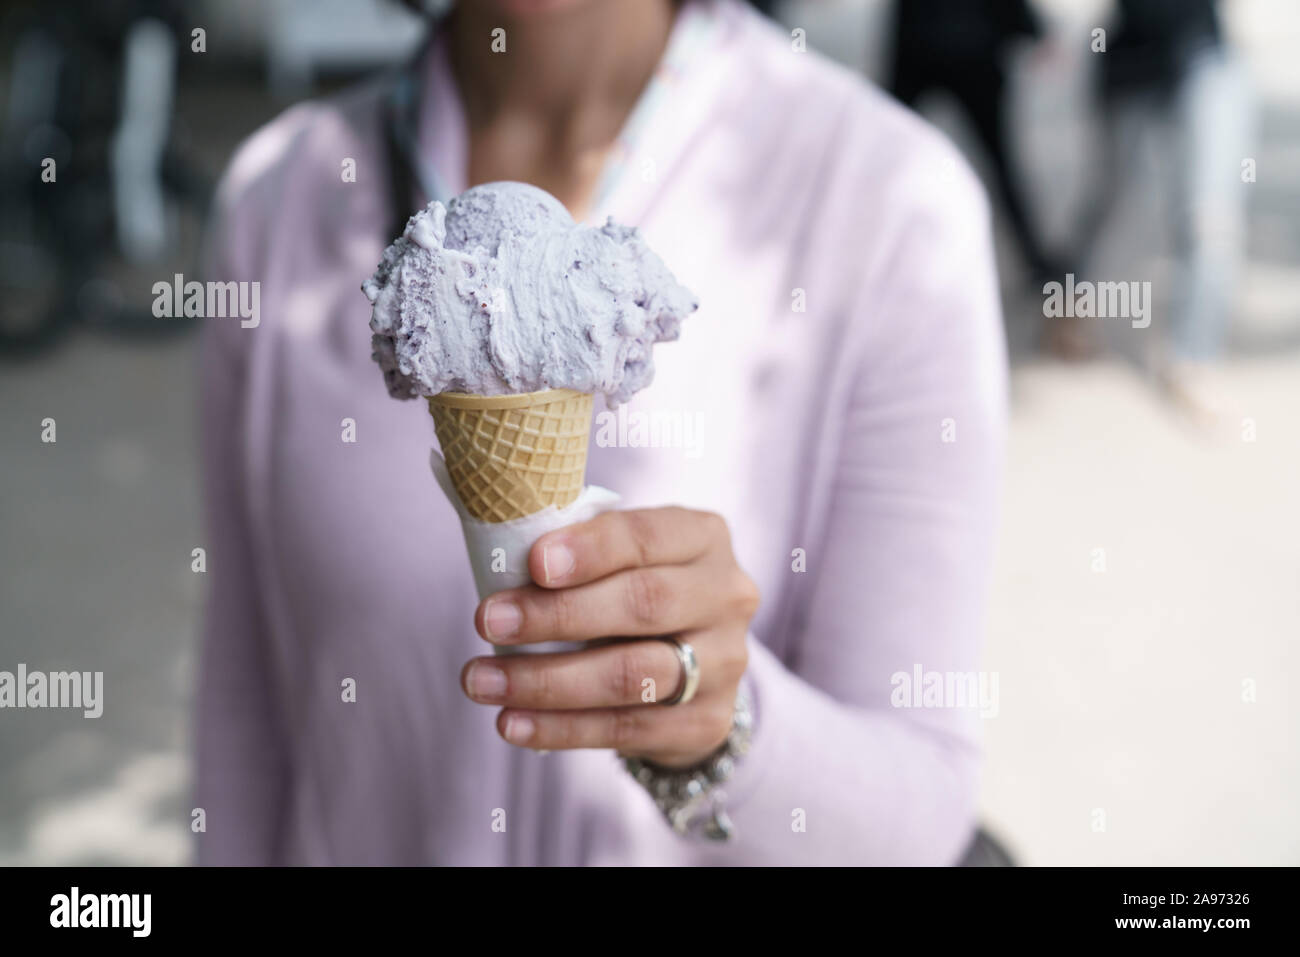 lavender ice-cream in a cone Stock Photo